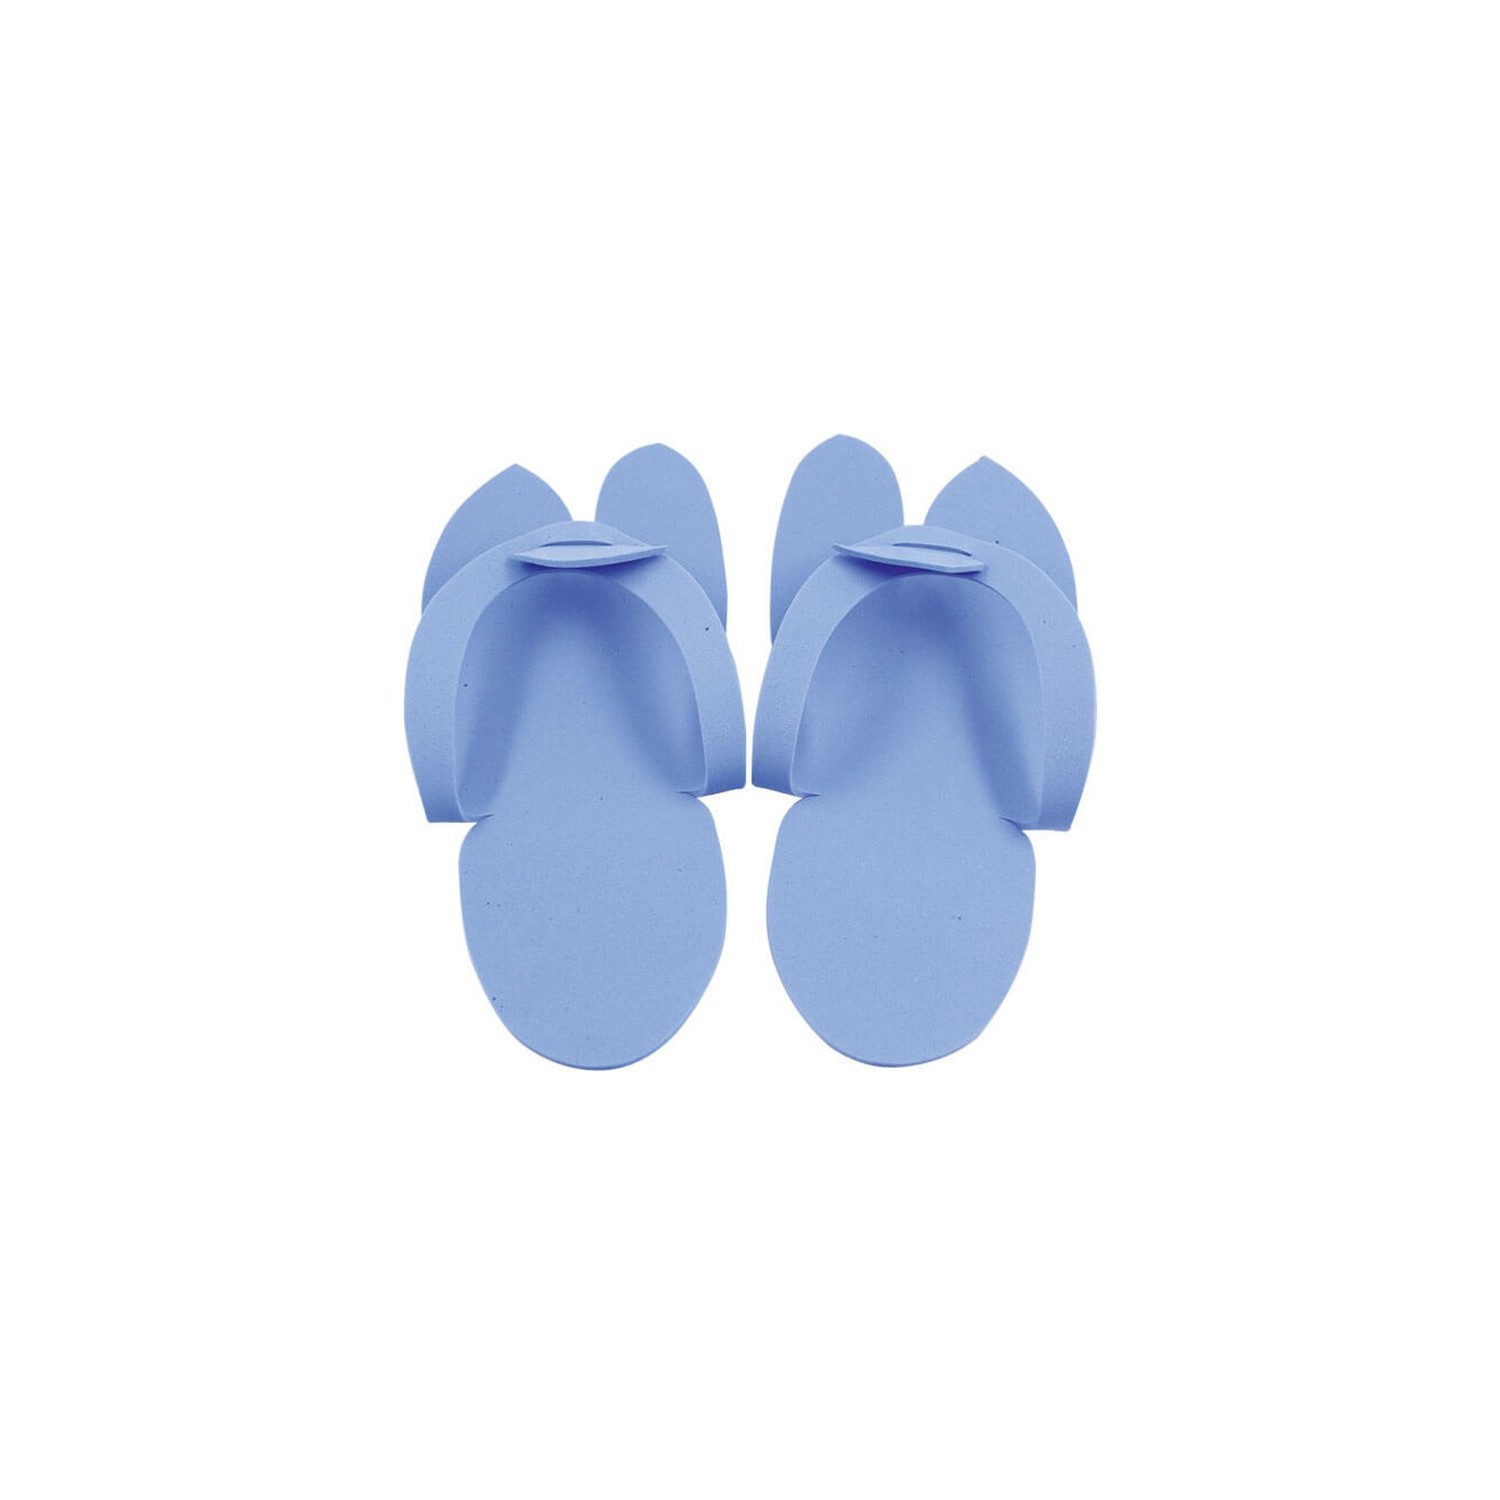 Eurostil Slippers Pedicure Colors Assorted 1Par (06776)